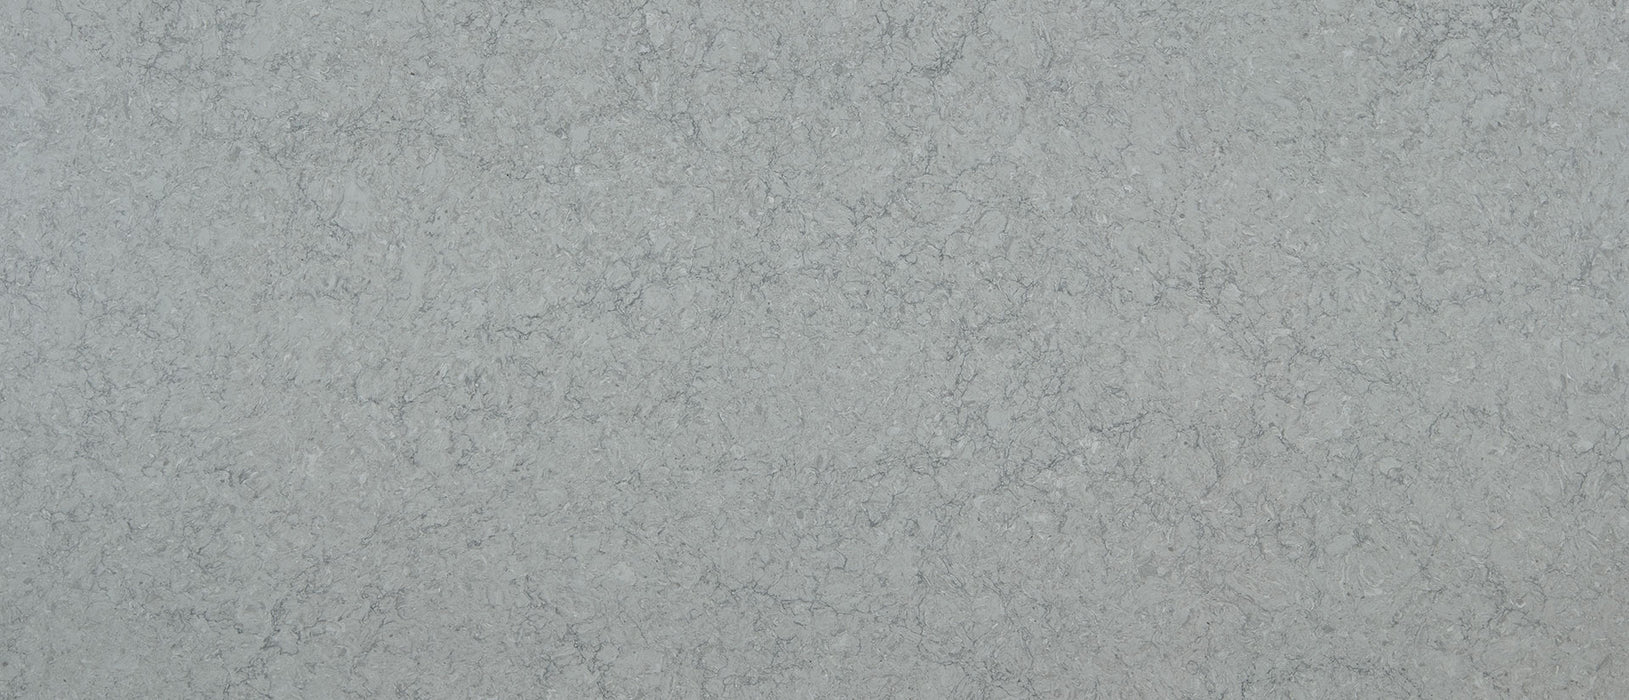 Galant gray quartz countertop slab